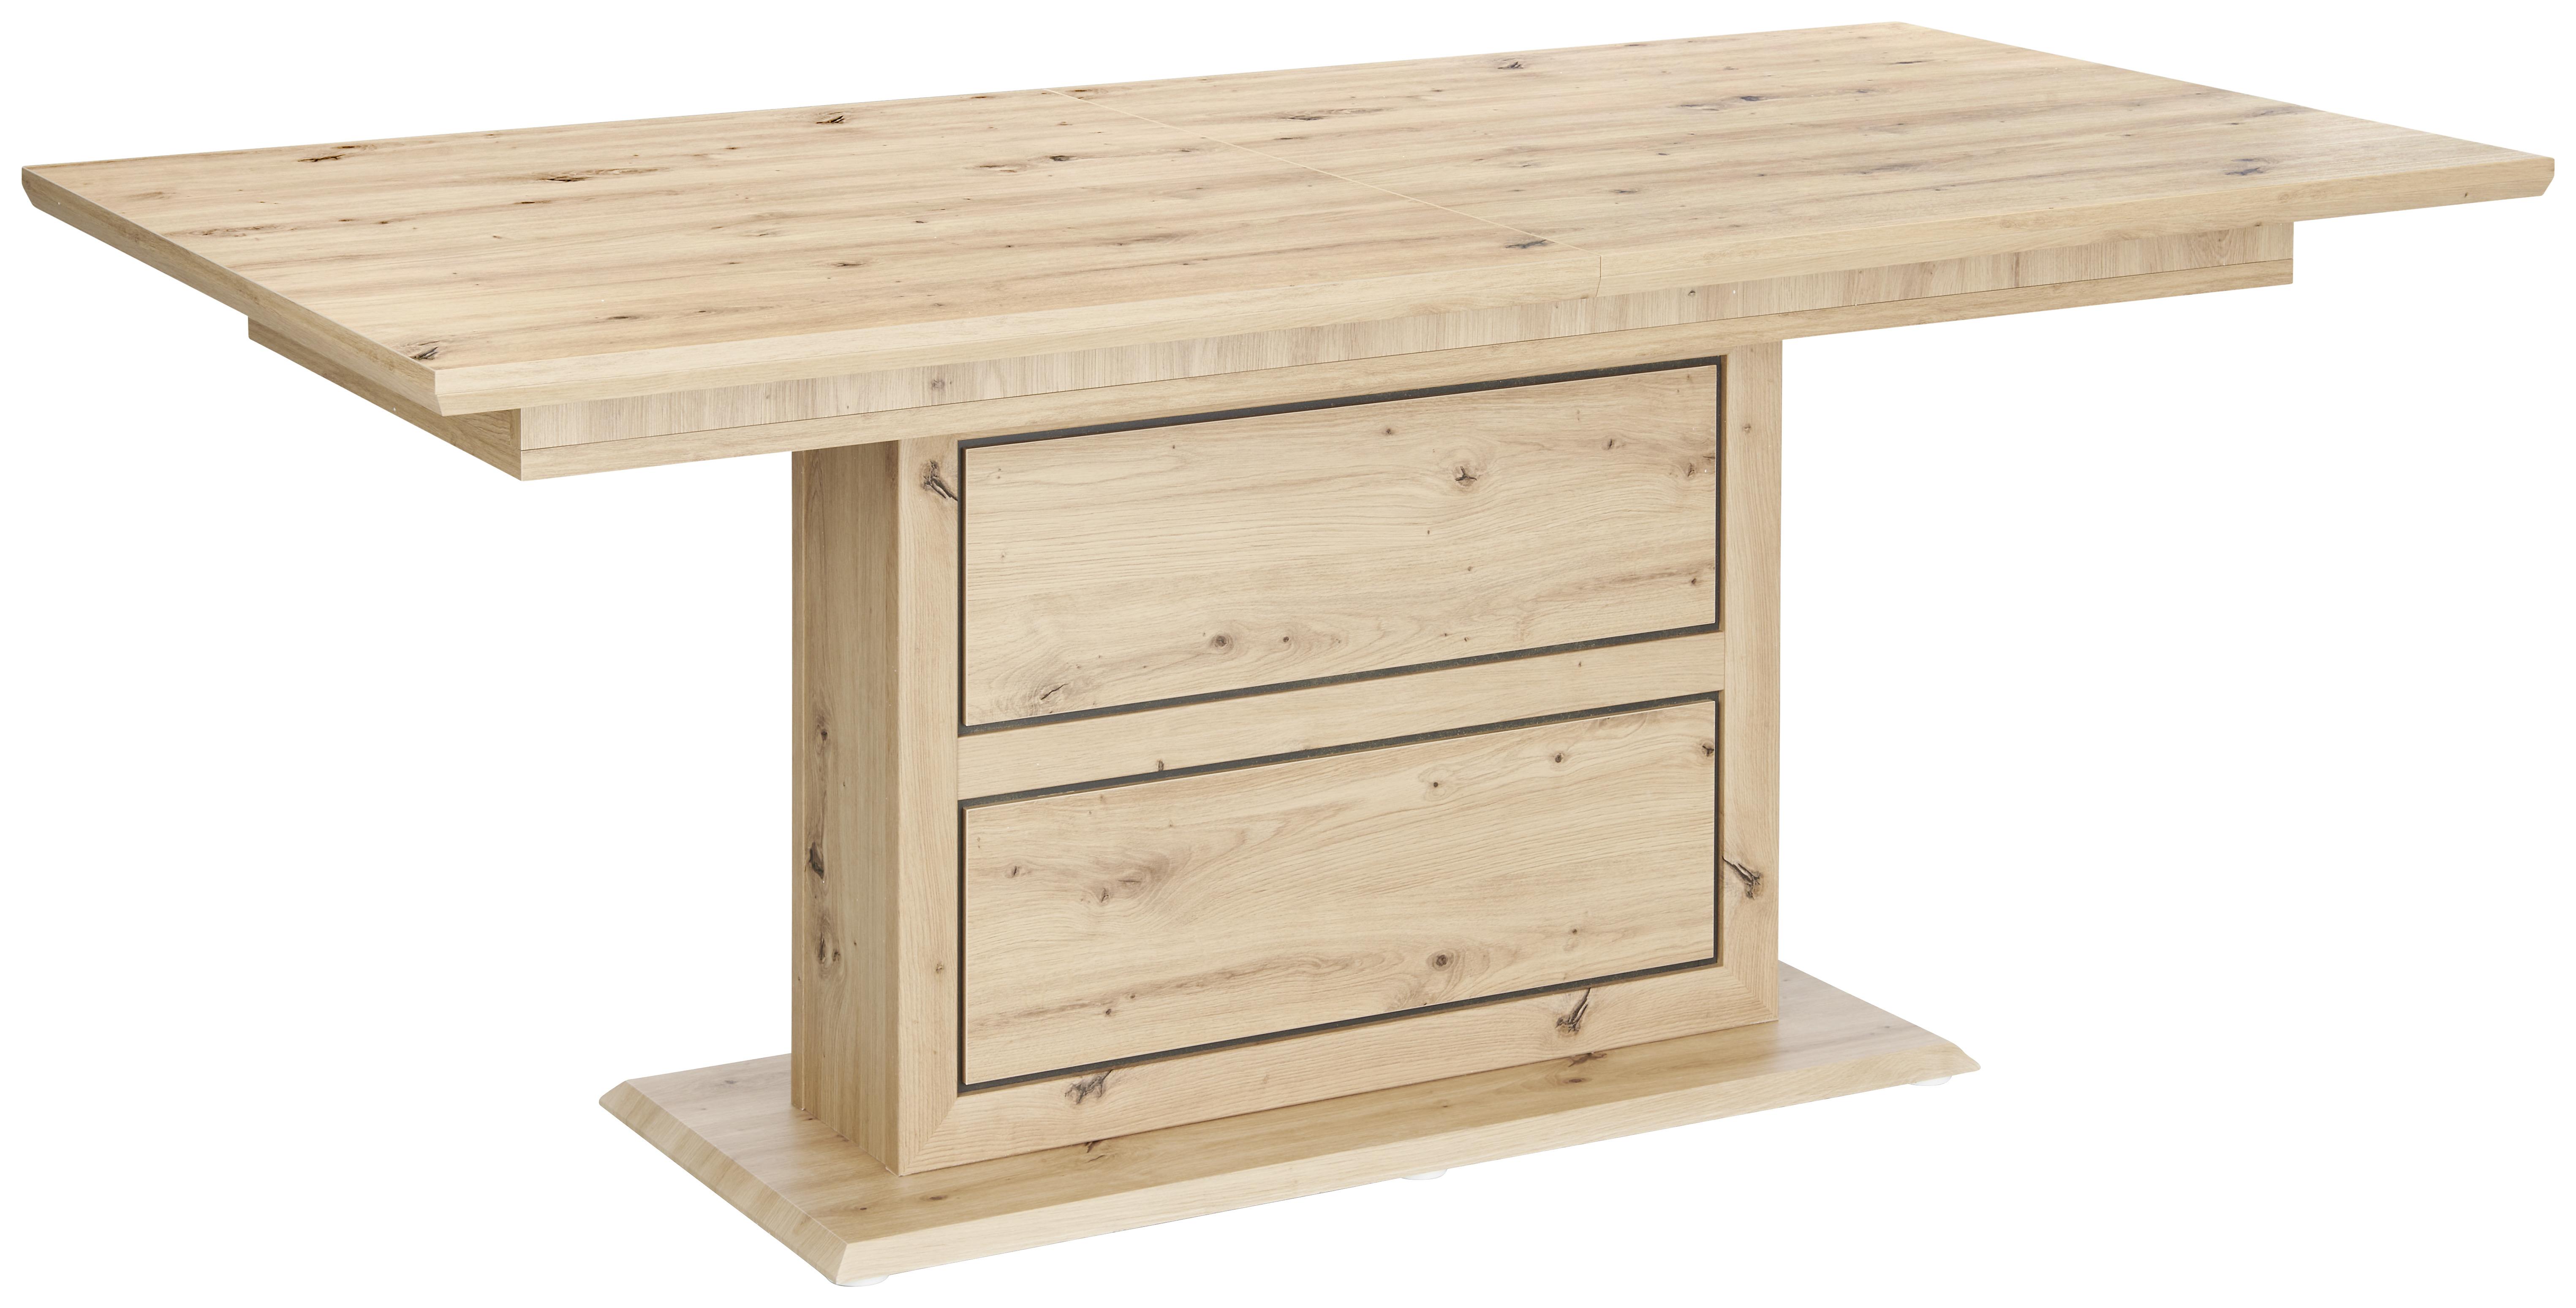 Výsuvný Stůl Harvey 180 Az - barvy dubu/antracitová, Konvenční, kompozitní dřevo (180/76,5/90cm)